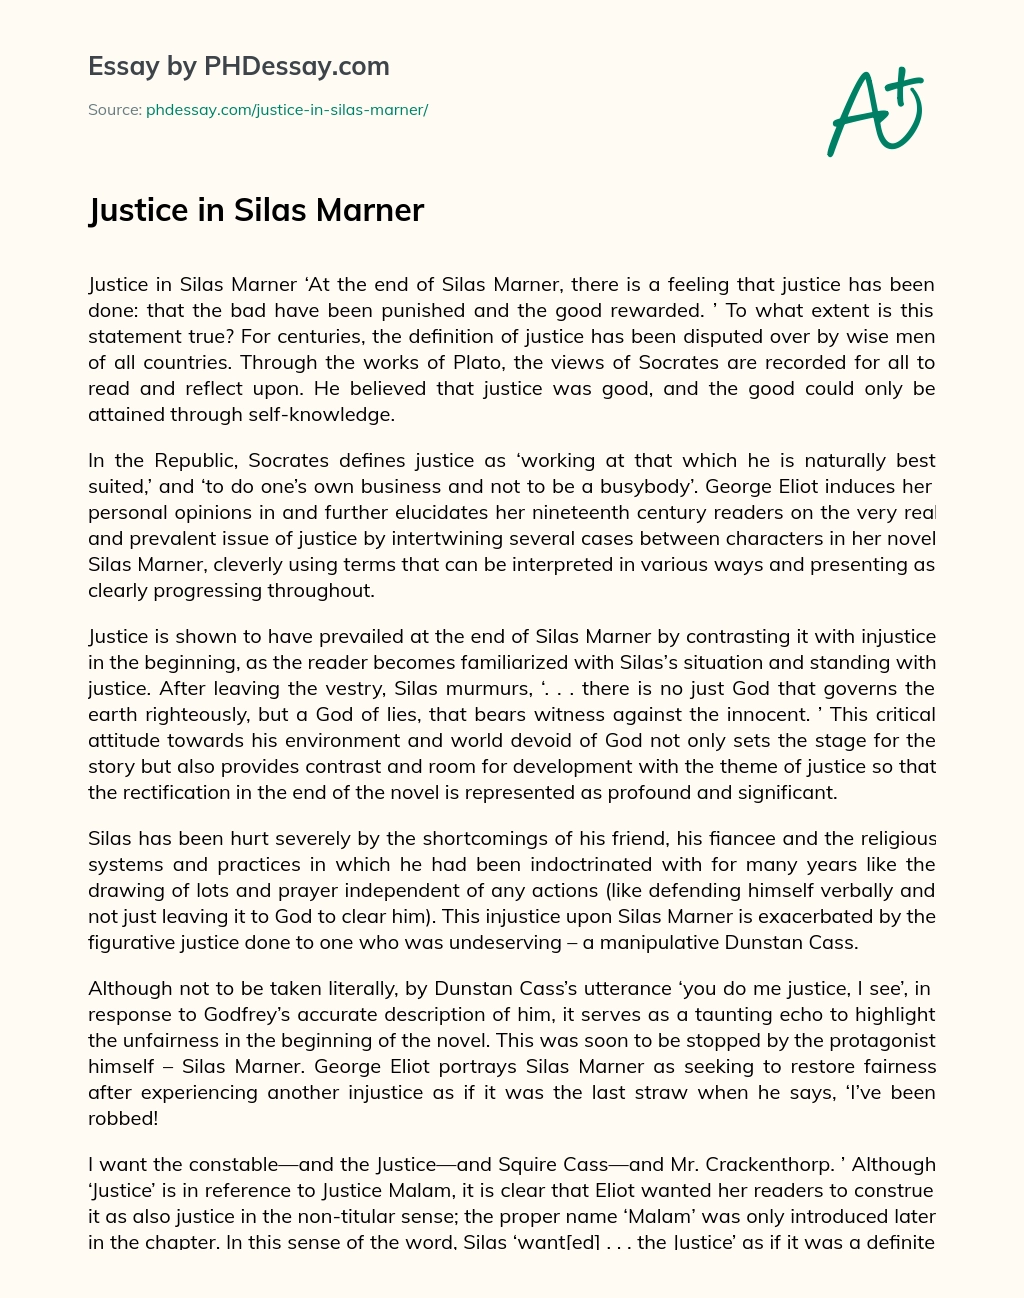 Justice in Silas Marner essay